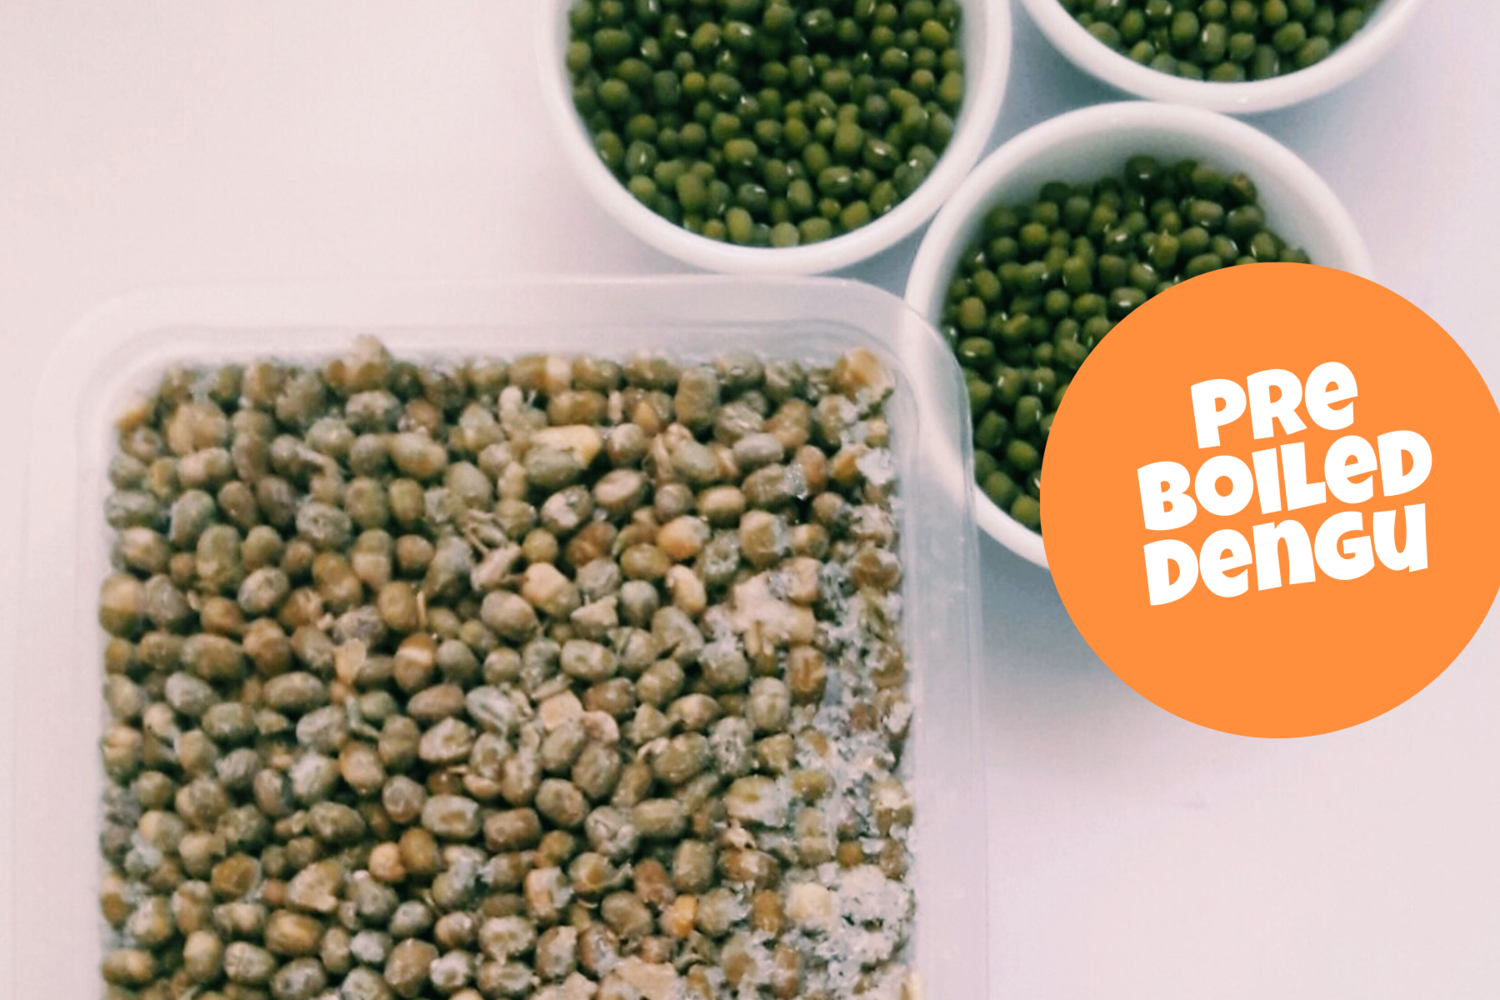 Pre Boiled Green grams a.k.a Dengu a.k.a Mung beans 500g pack